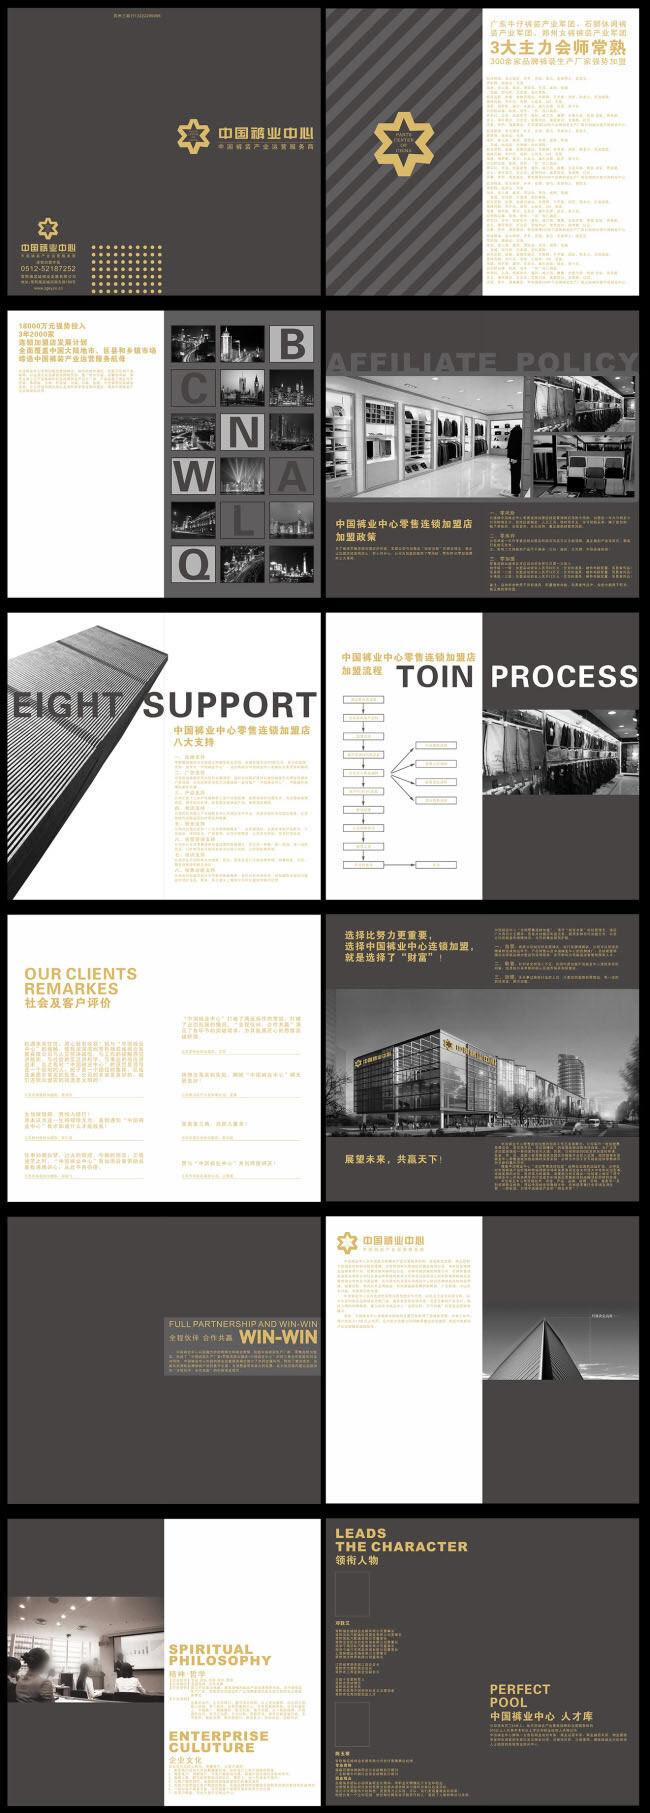 企业 画册设计 模板 公司 宣传册 画册封面 白色